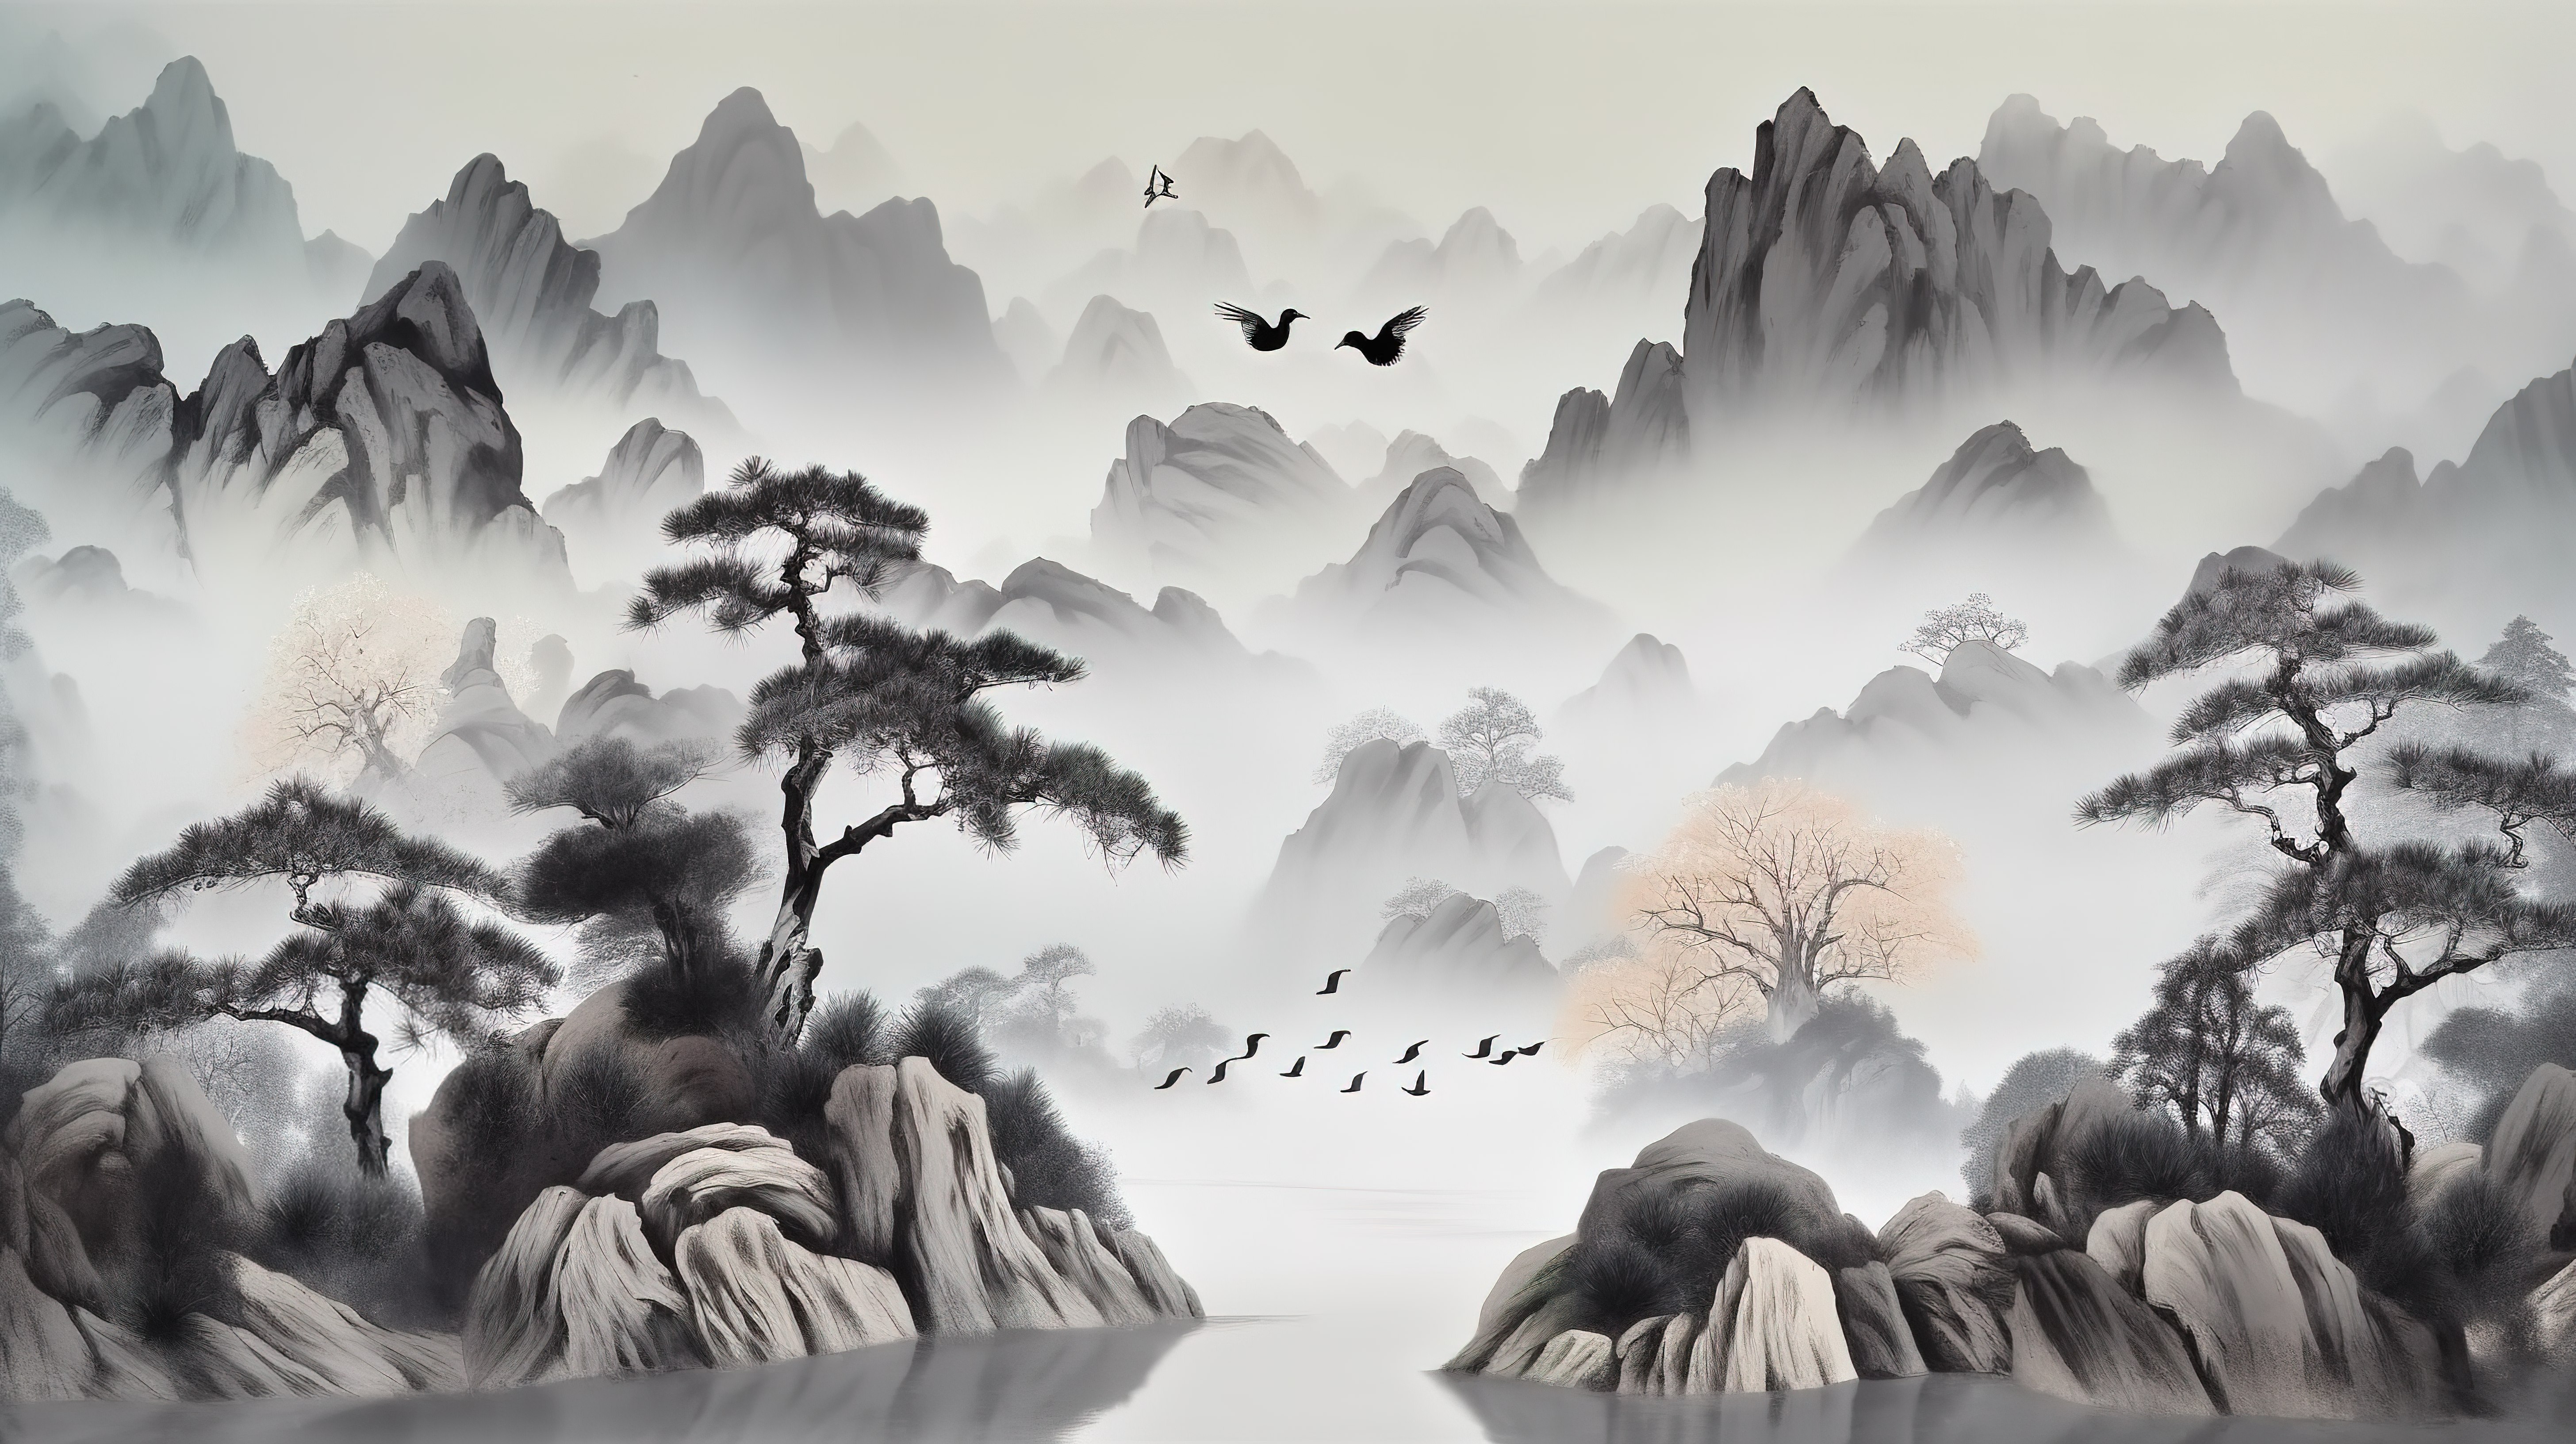 灰色画布上风景秀丽的 3D 中国风景，配有圣诞树鸟山和白云图片